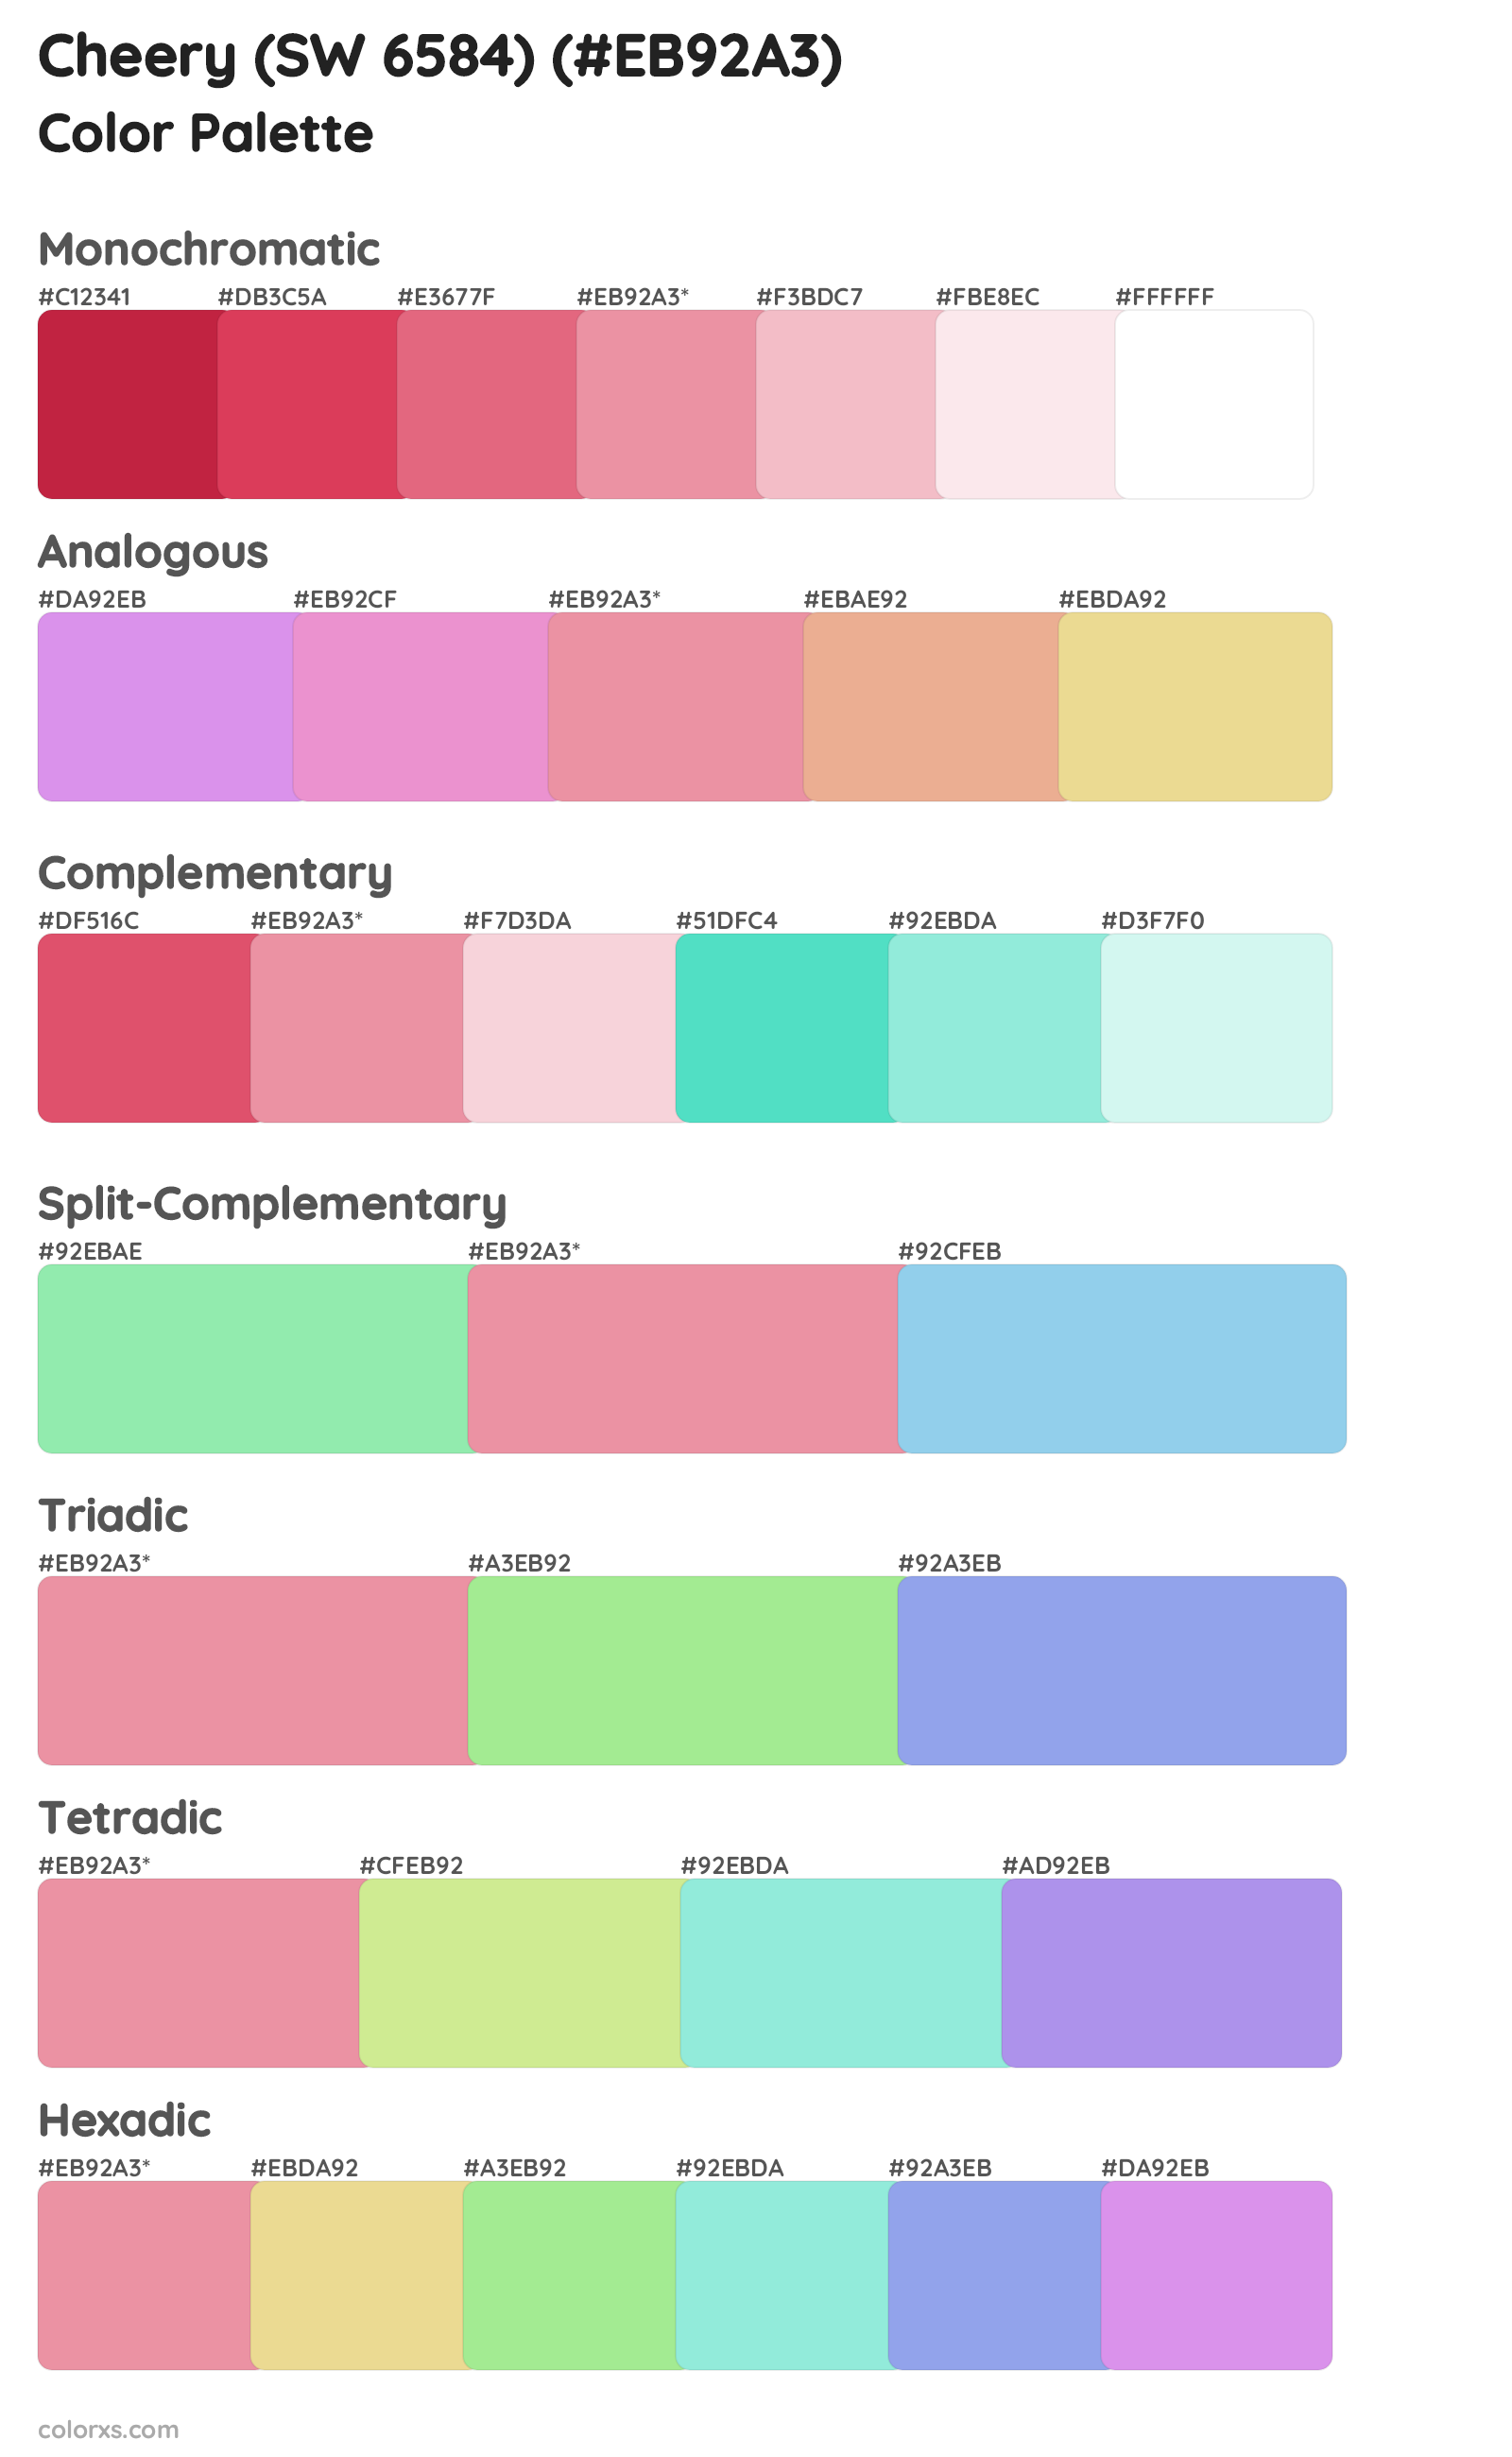 Cheery (SW 6584) Color Scheme Palettes